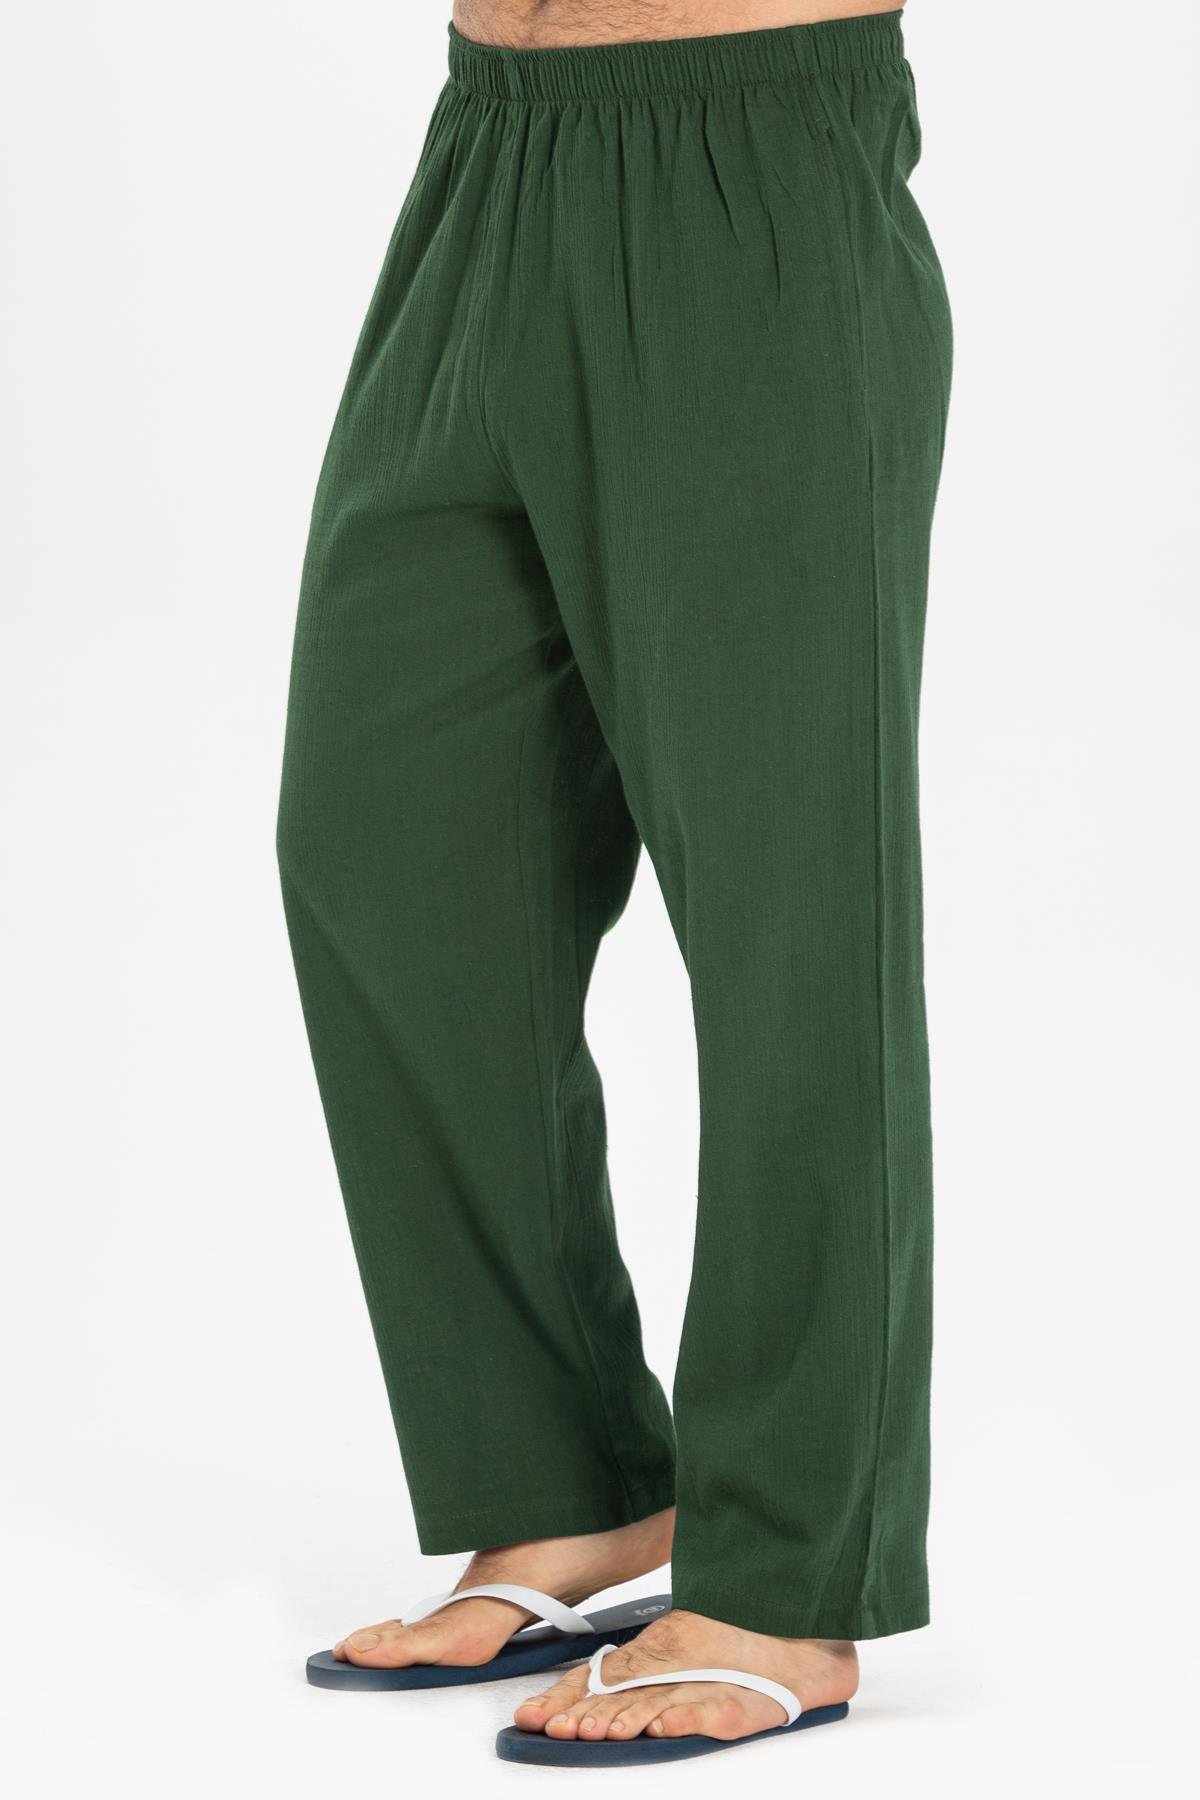 Şile Bezi Erkek Yazlık Şalvar Pantolon Yeşil | silemoda.com